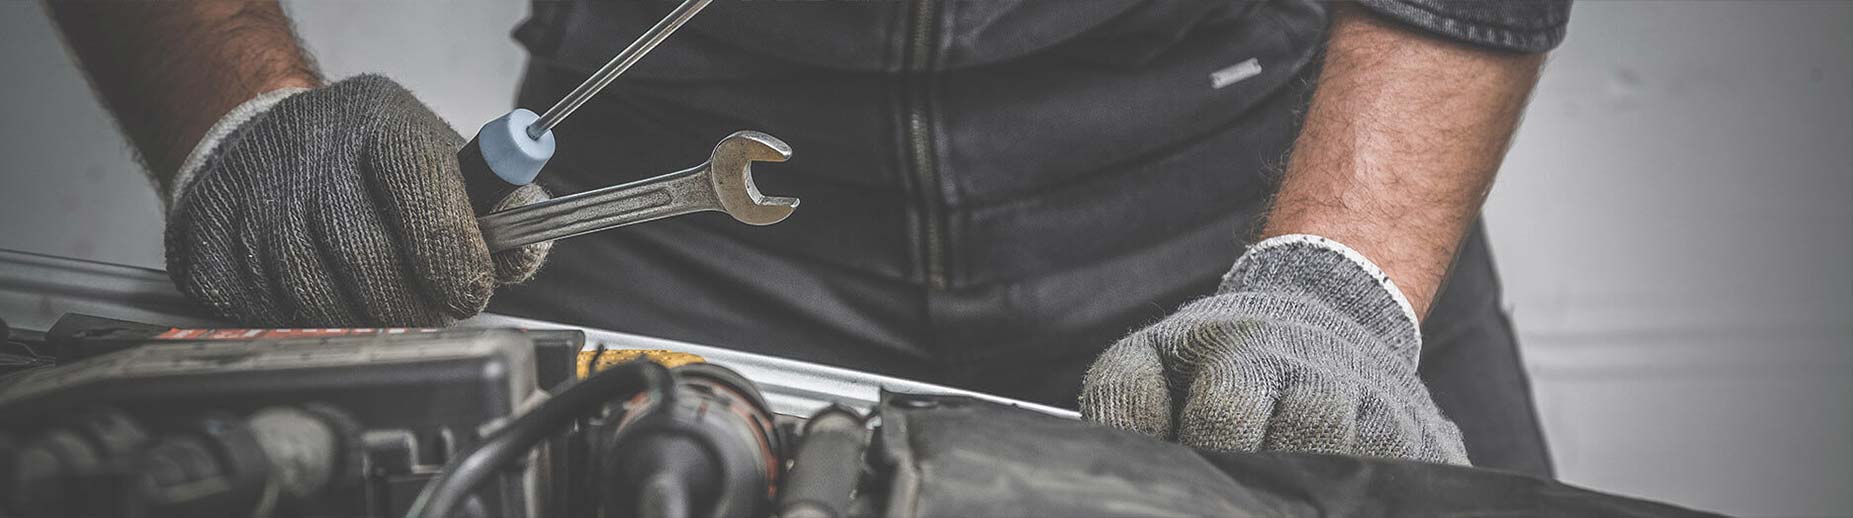 Kitchener Auto Repair, Car Repair and Brake Service